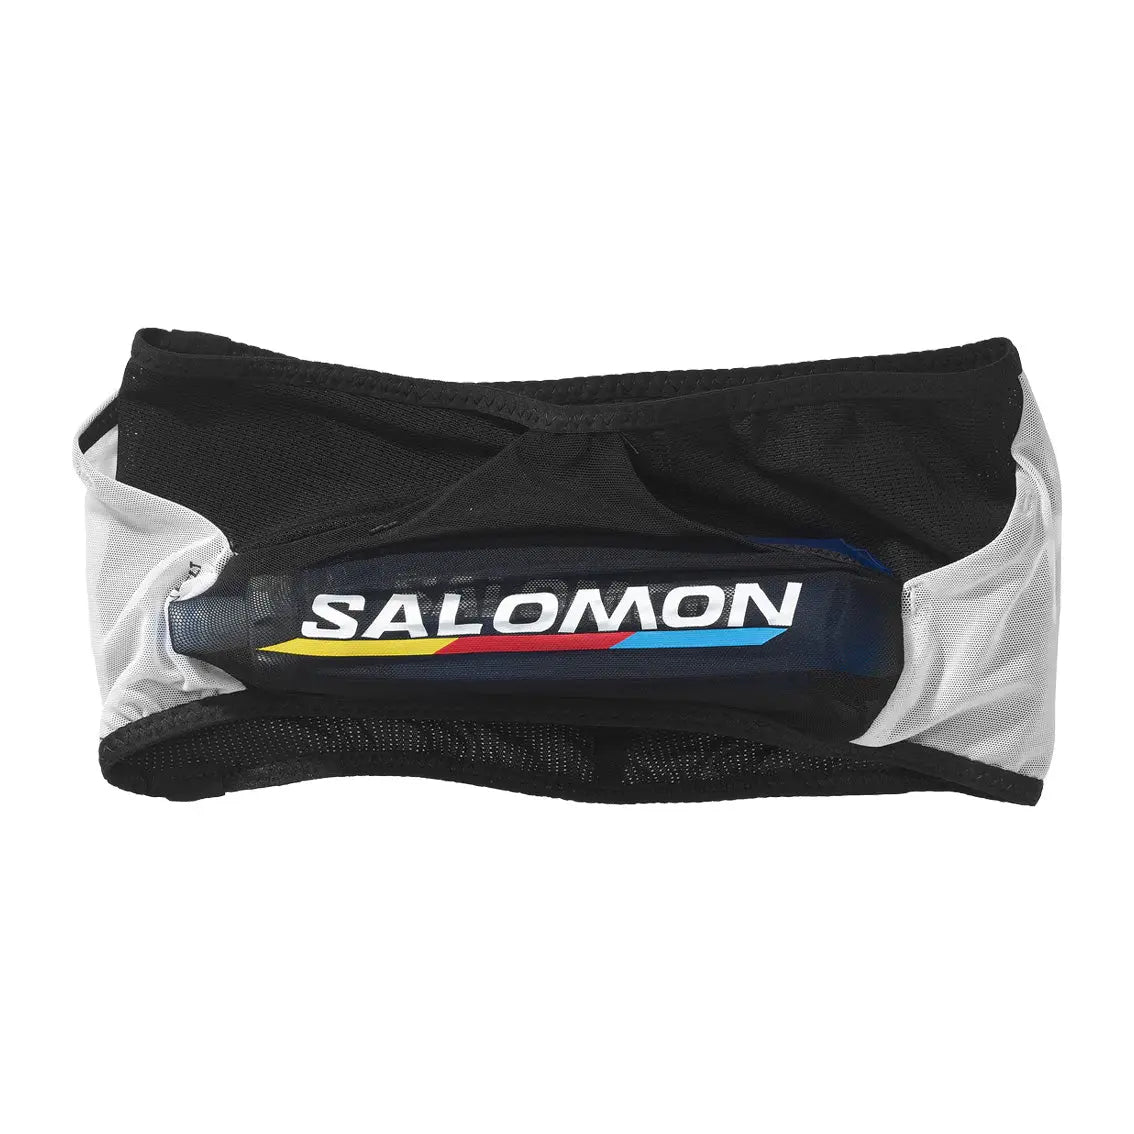 Unisex Salomon Advanced Skin Belt Race Flag